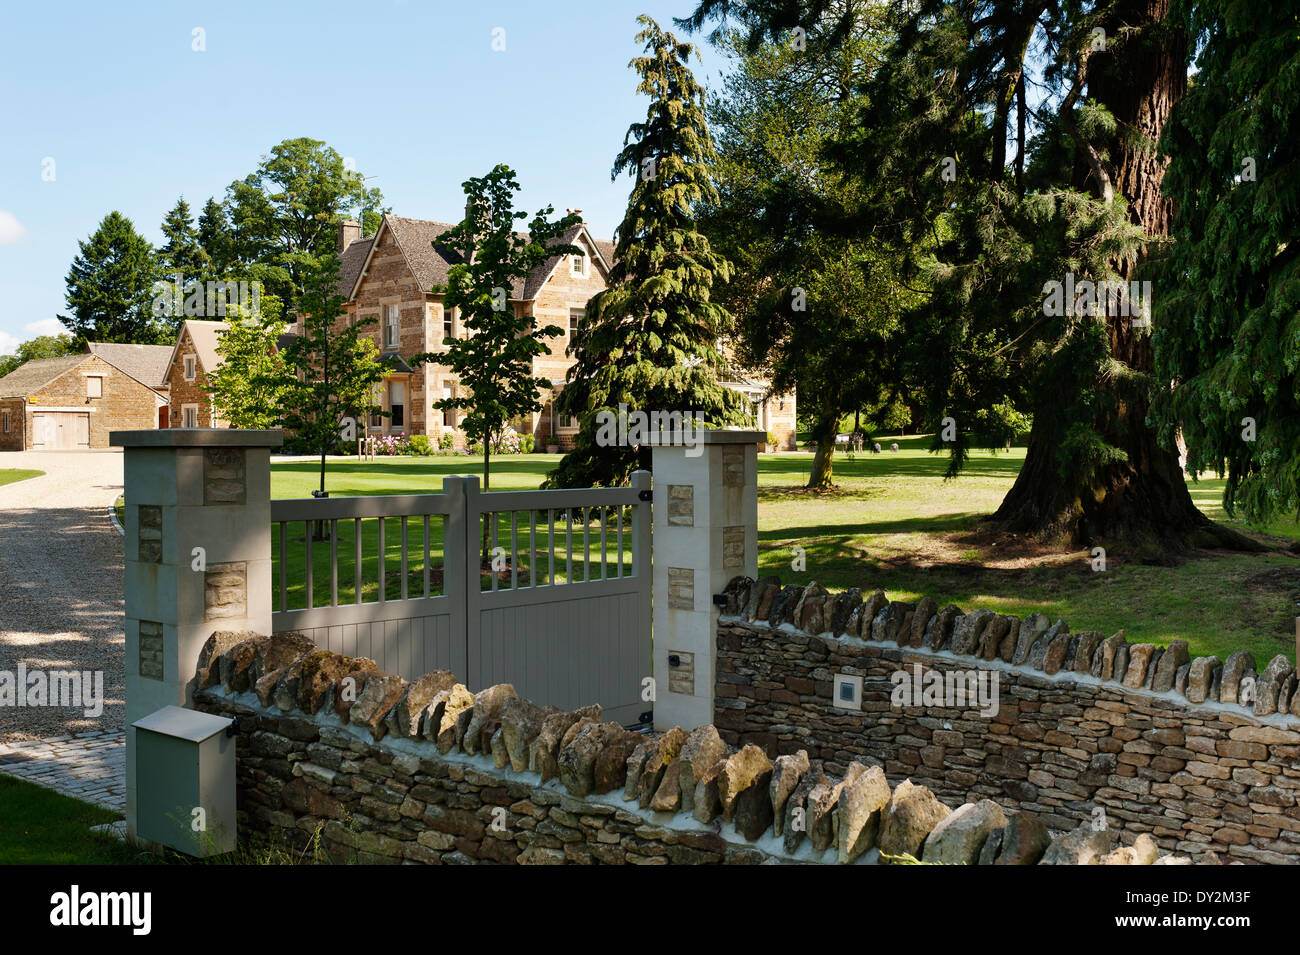 Eingangstore und Einfahrt des viktorianischen Farmhoue Haus mit parkähnlichem Garten Stockfoto